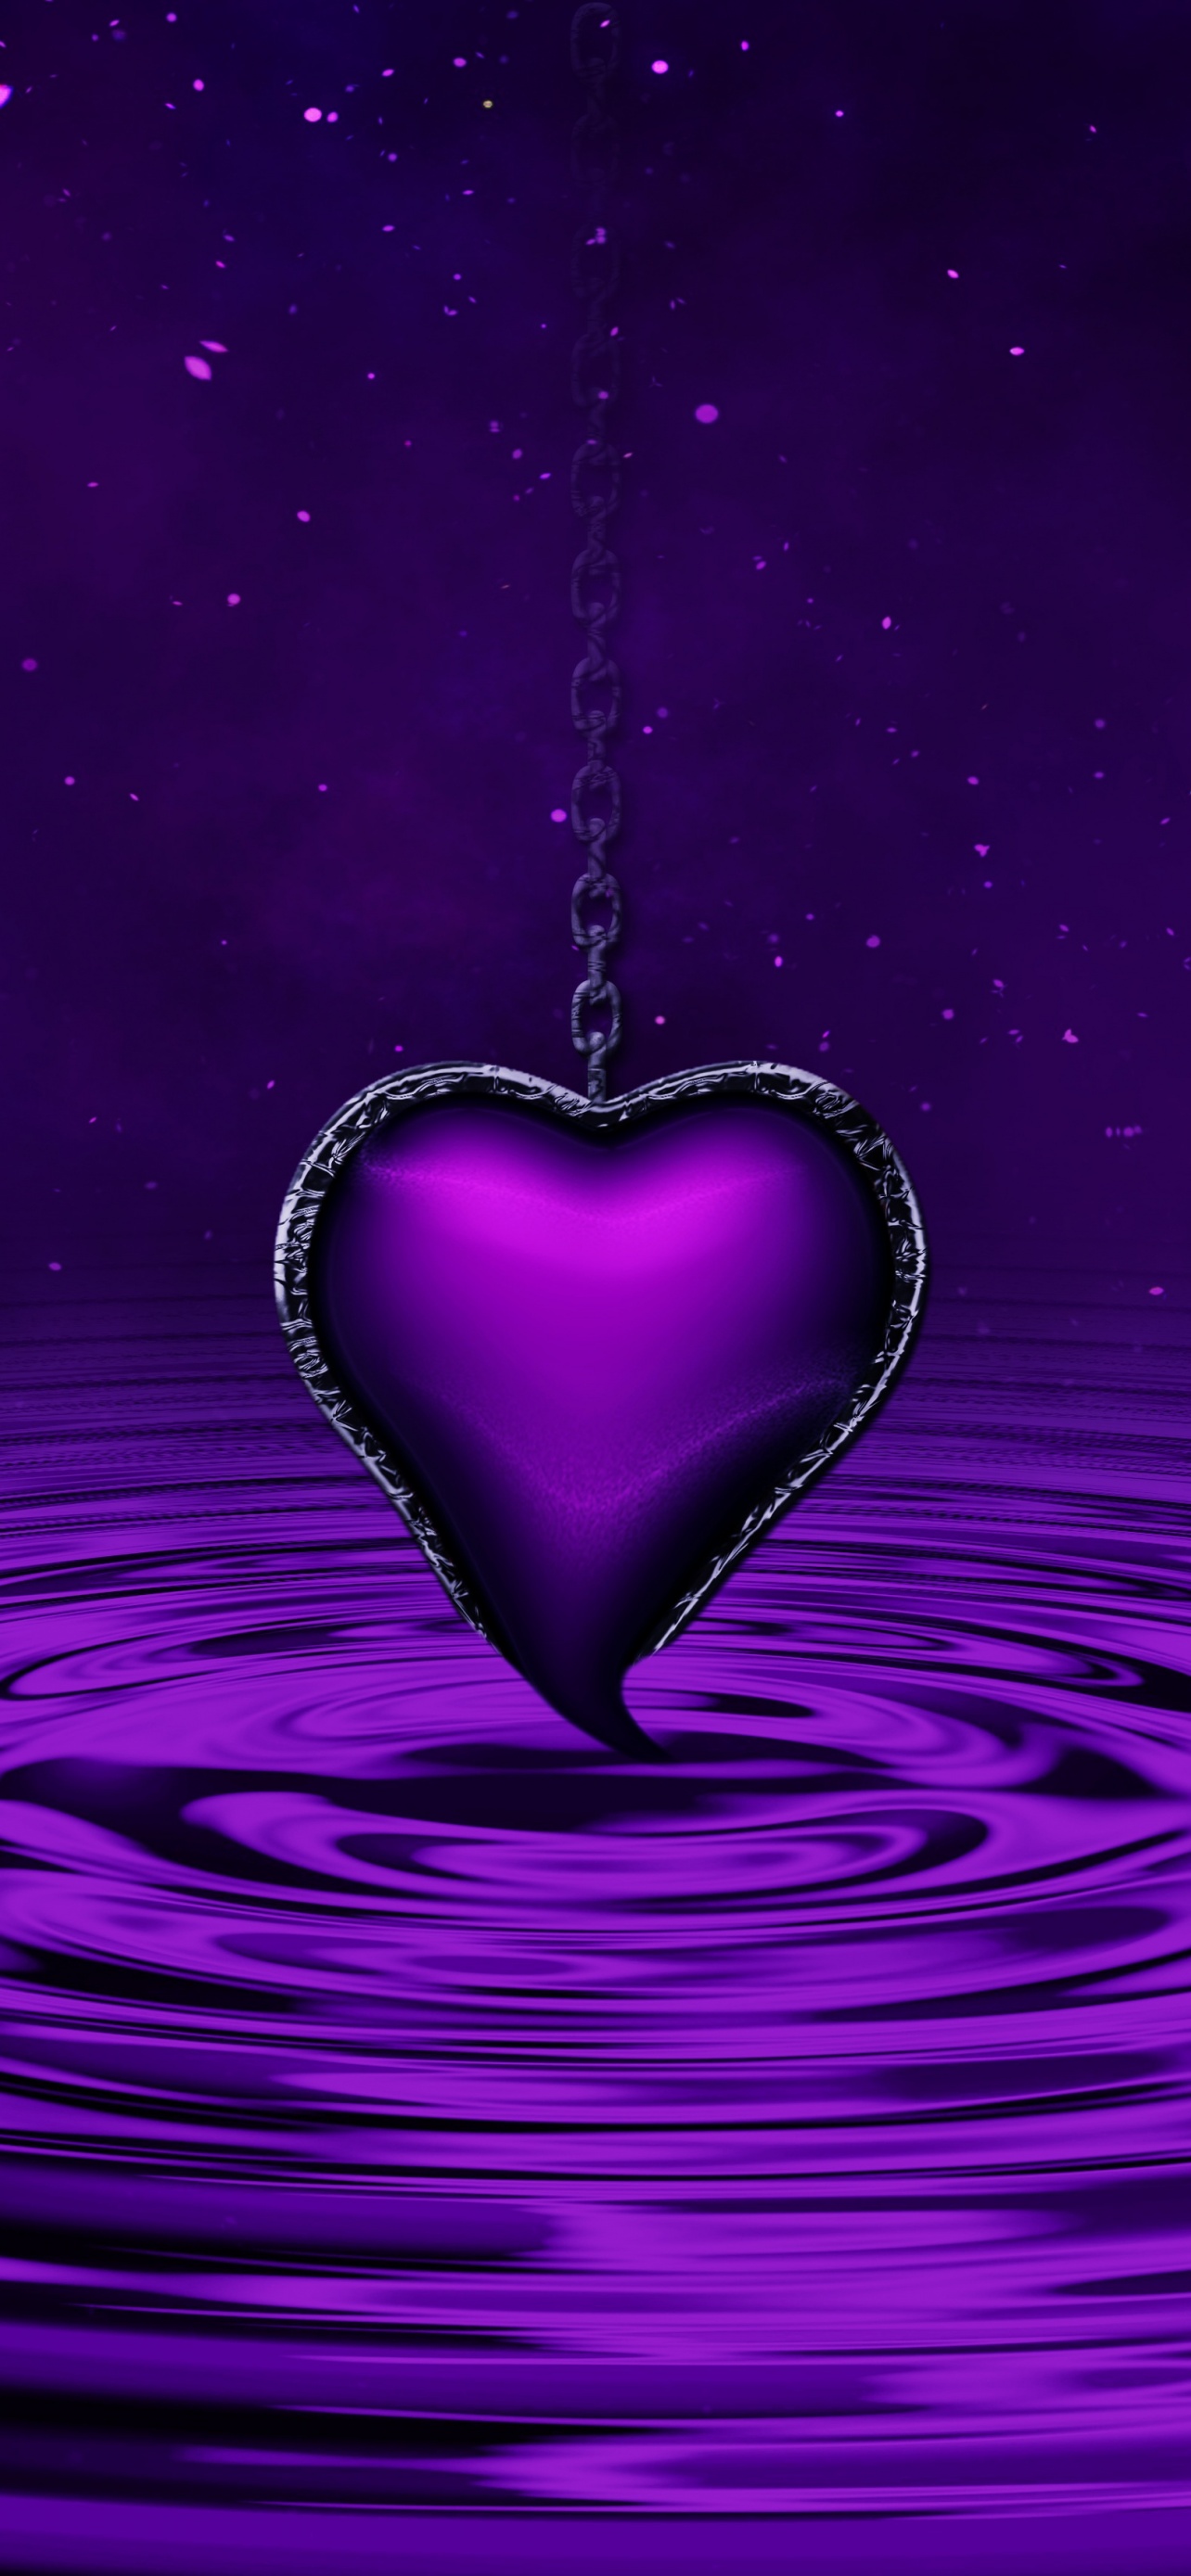 y2k background purple hearts 21426066 Vector Art at Vecteezy